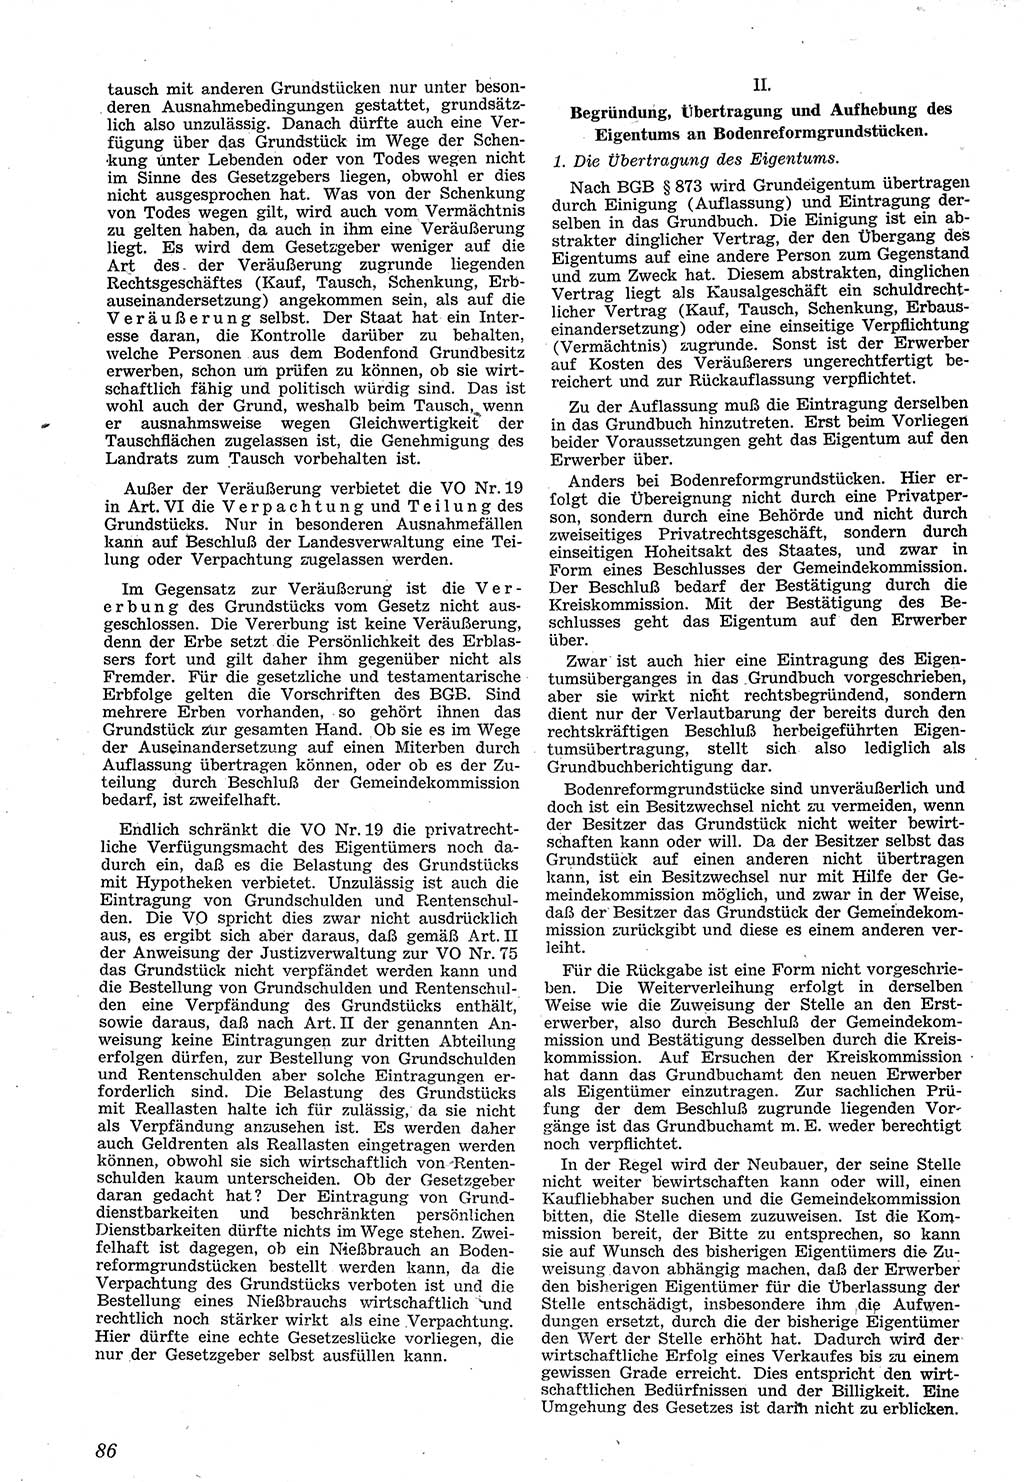 Neue Justiz (NJ), Zeitschrift für Recht und Rechtswissenschaft [Sowjetische Besatzungszone (SBZ) Deutschland], 1. Jahrgang 1947, Seite 86 (NJ SBZ Dtl. 1947, S. 86)